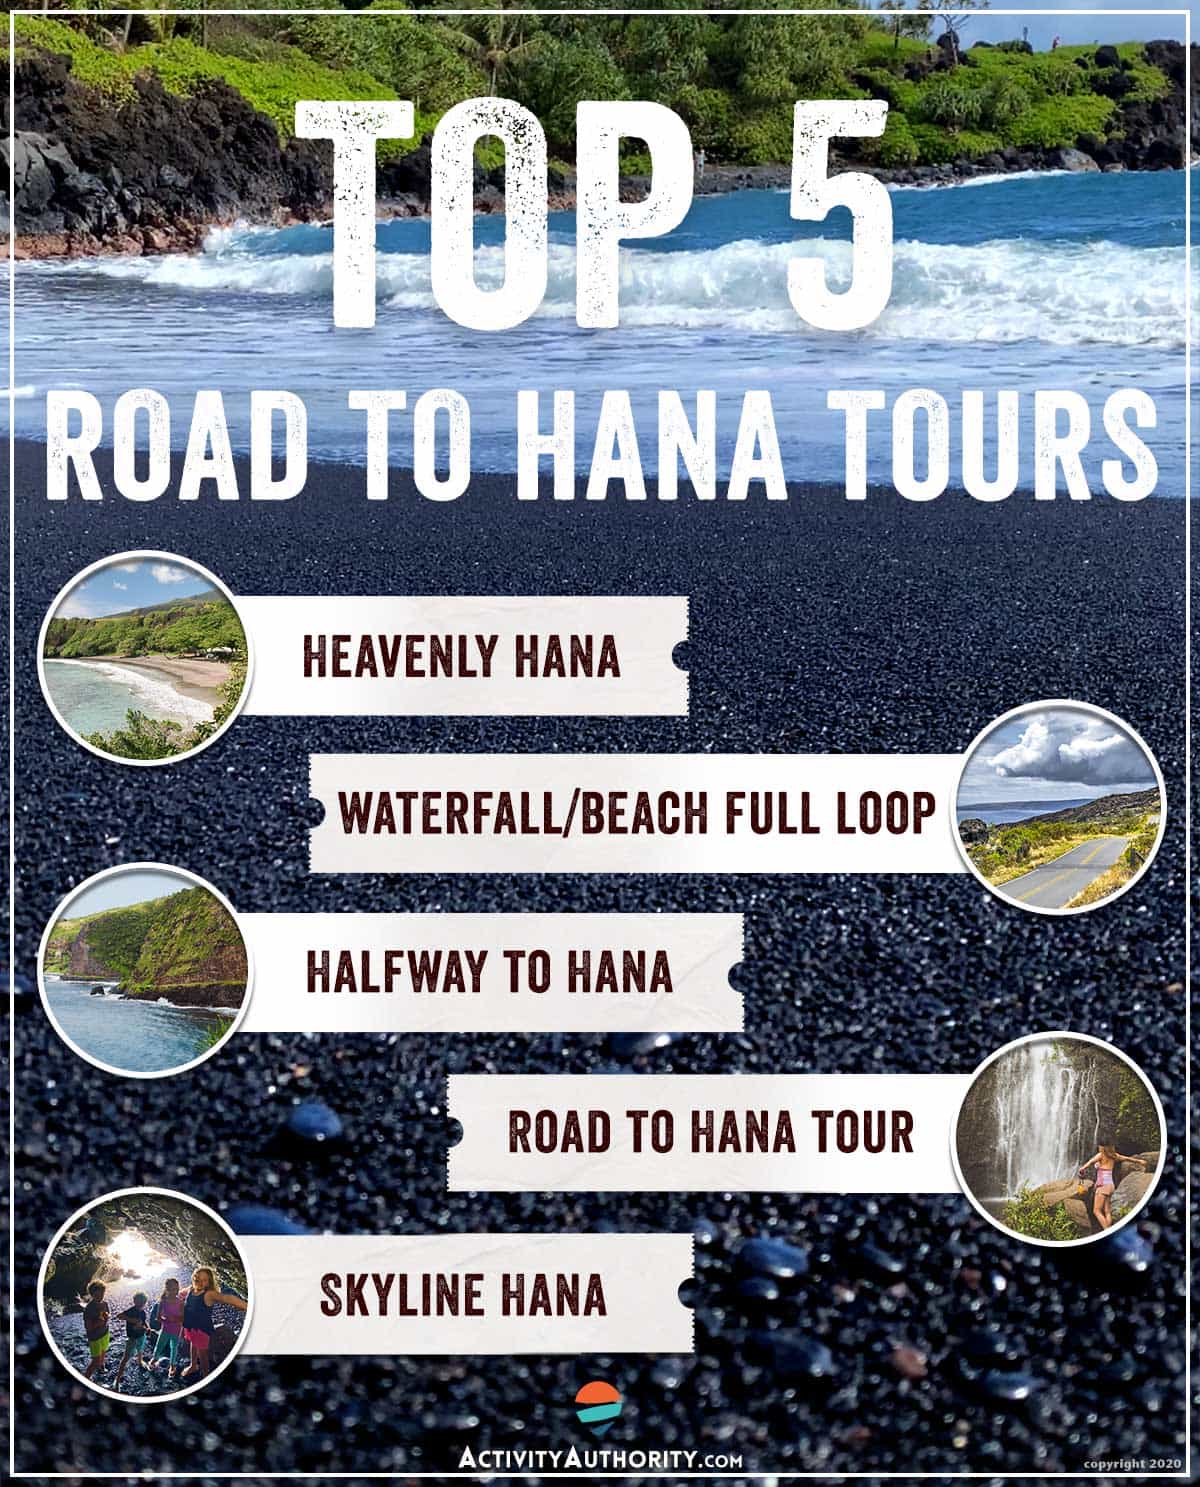 tripadvisor road to hana tour